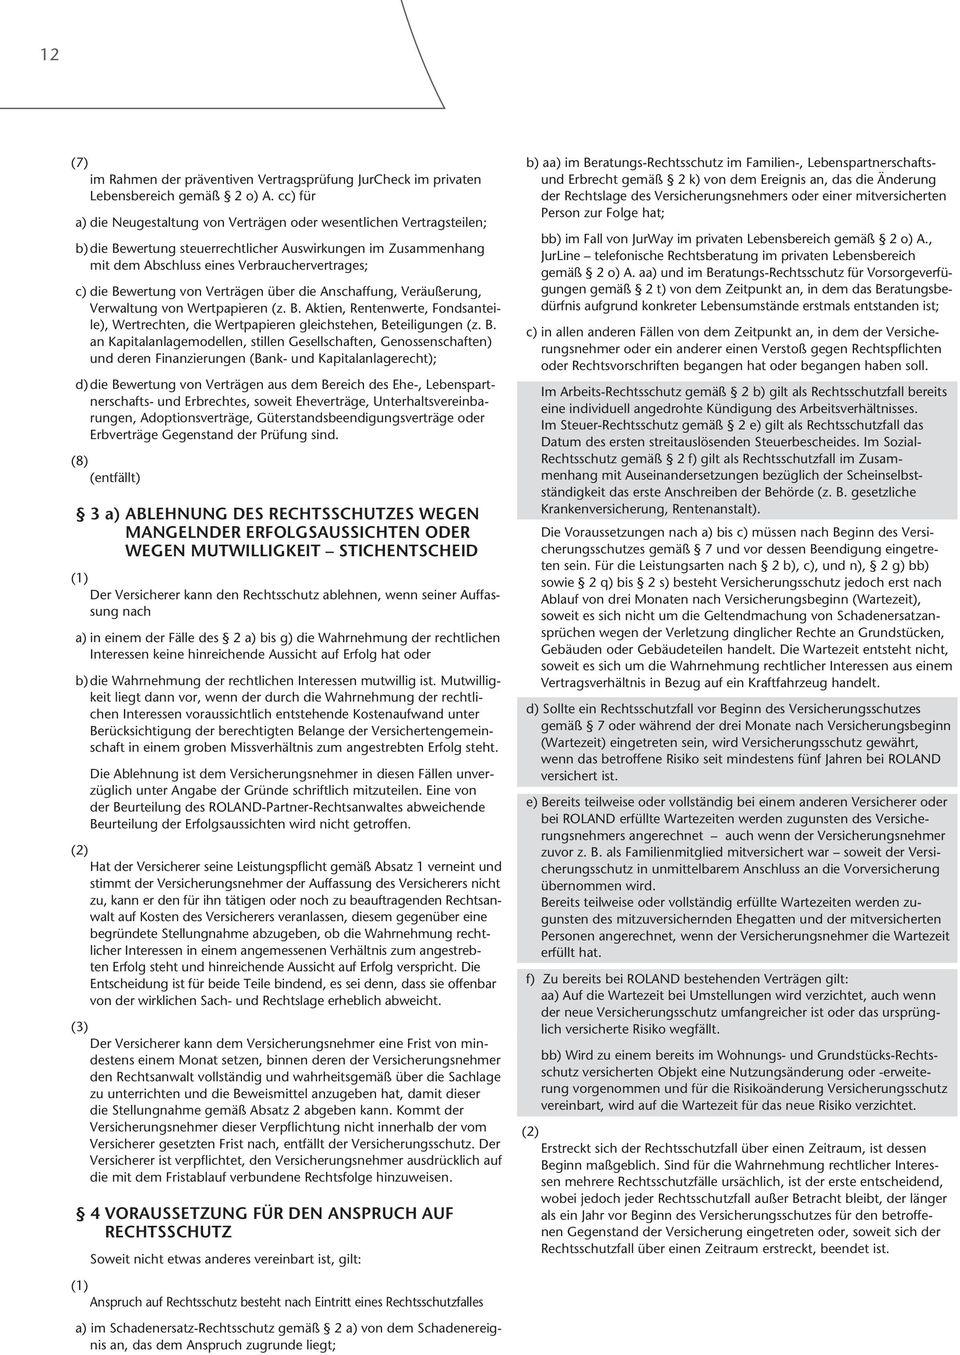 Bewertung von Verträgen über die Anschaffung, Veräußerung, Verwaltung von Wertpapieren (z. B.